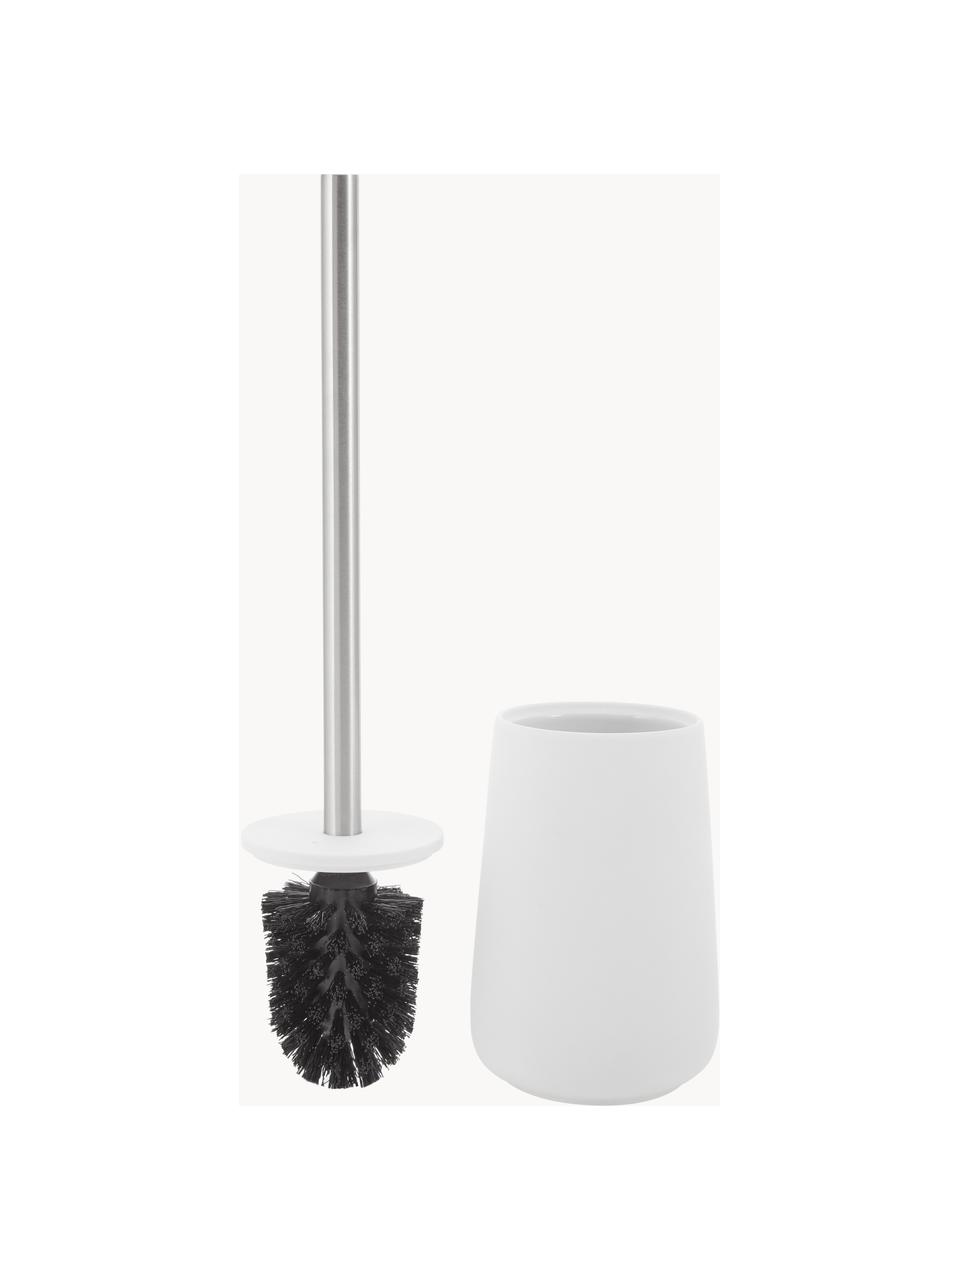 Toilettenbürste Nova mit Porzellan-Behälter, Behälter: Porzellan, Griff: Edelstahl, Weiss, Ø 10 x H 37 cm